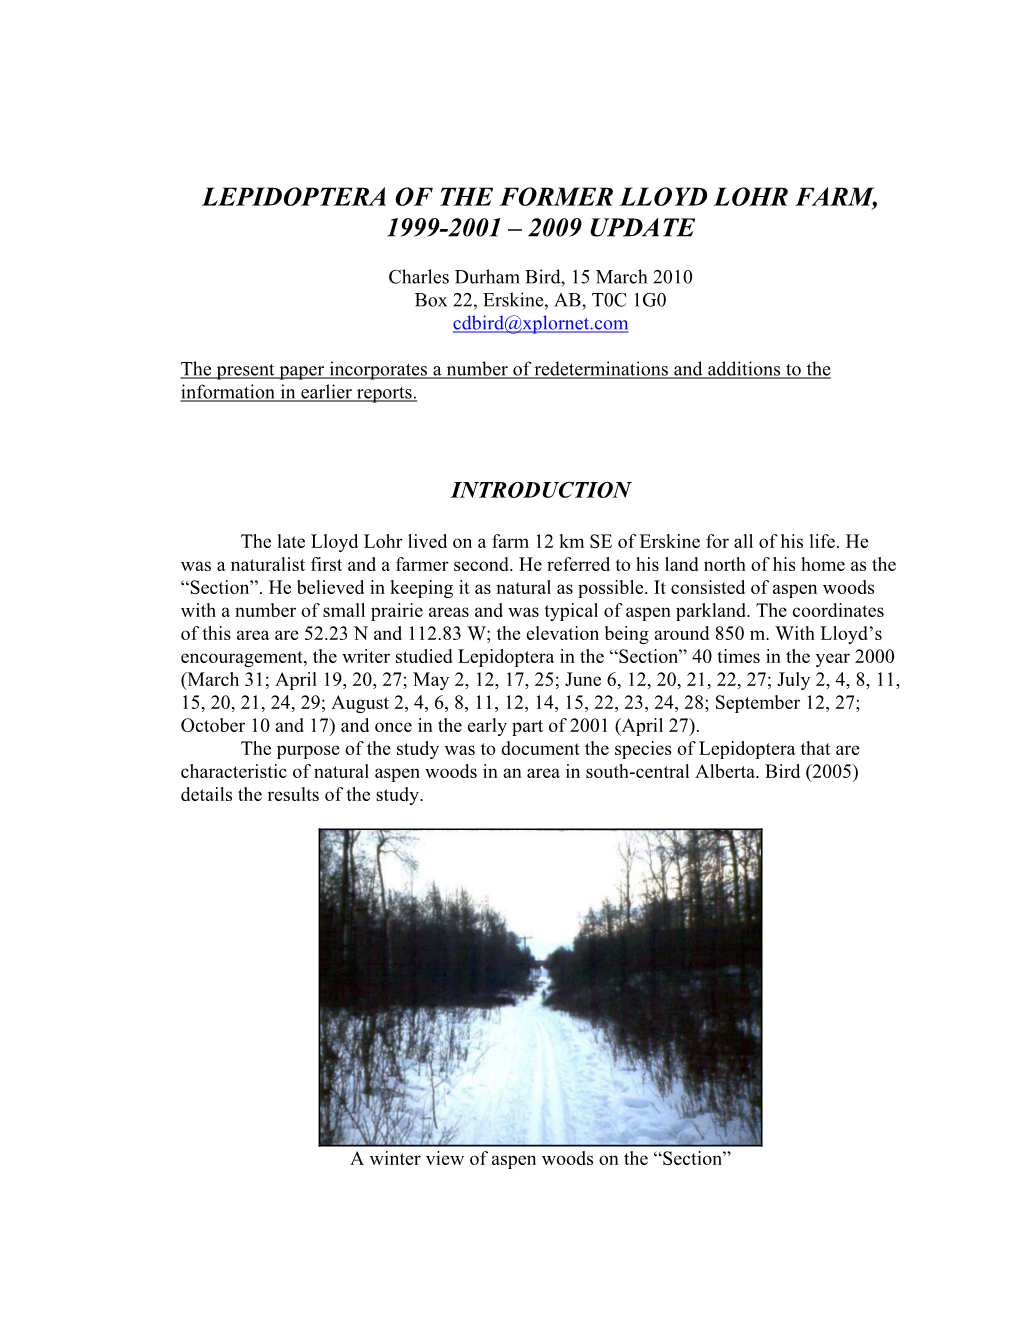 Lepidoptera of the Former Lloyd Lohr Farm 1999-2001